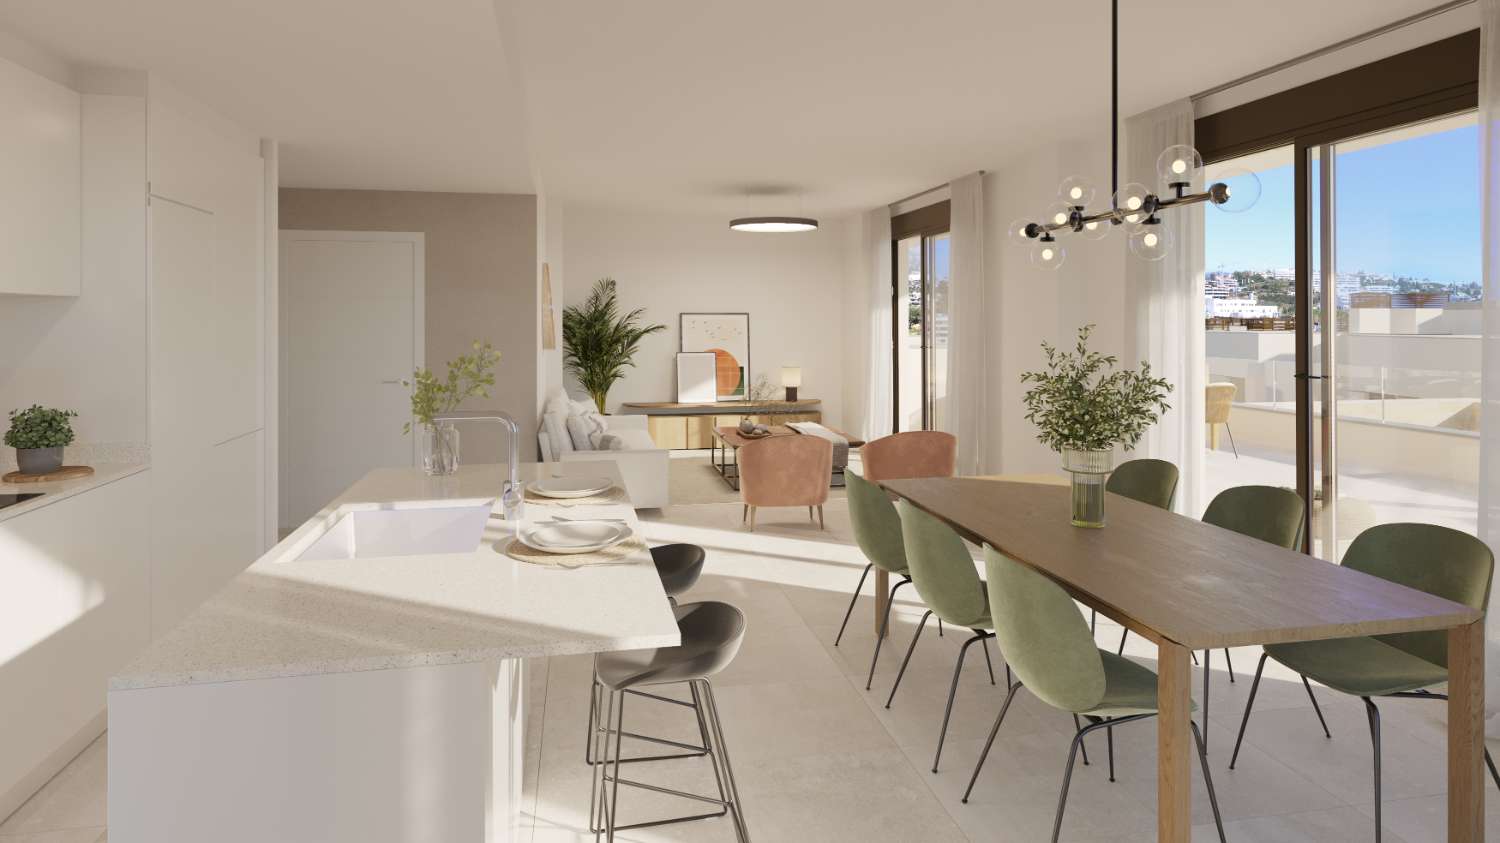 New Apartment with Private Garden in Estepona - Costa del Sol